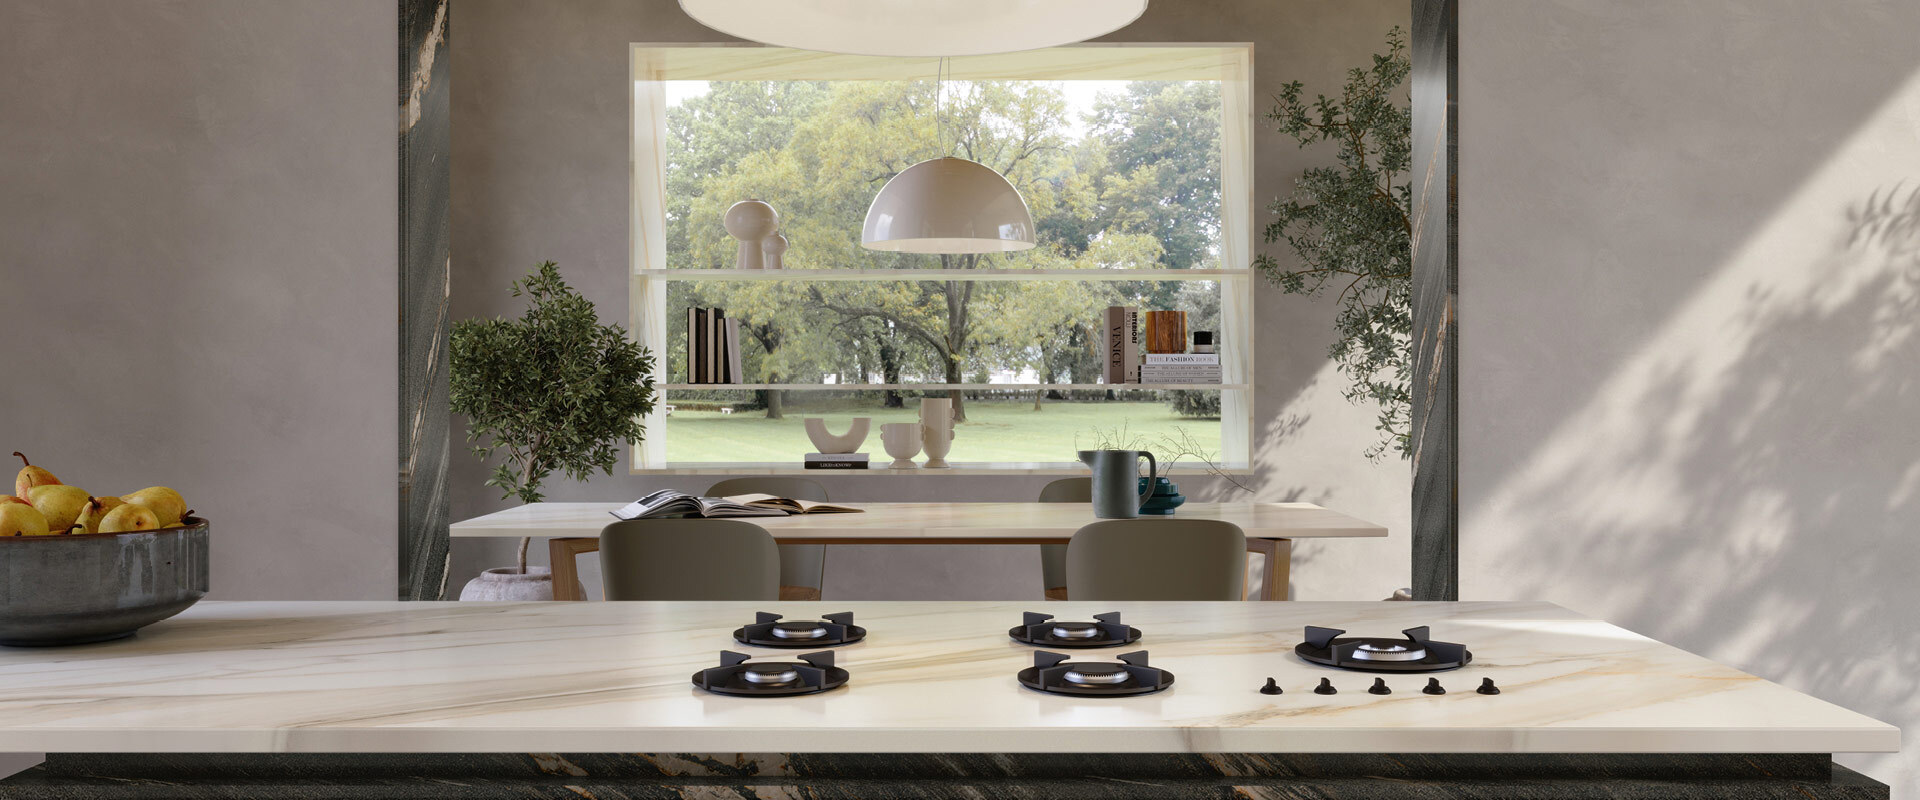 Küchen-Countertops aus Feinsteinzeug: Design, Leistung und Nachhaltigkeit